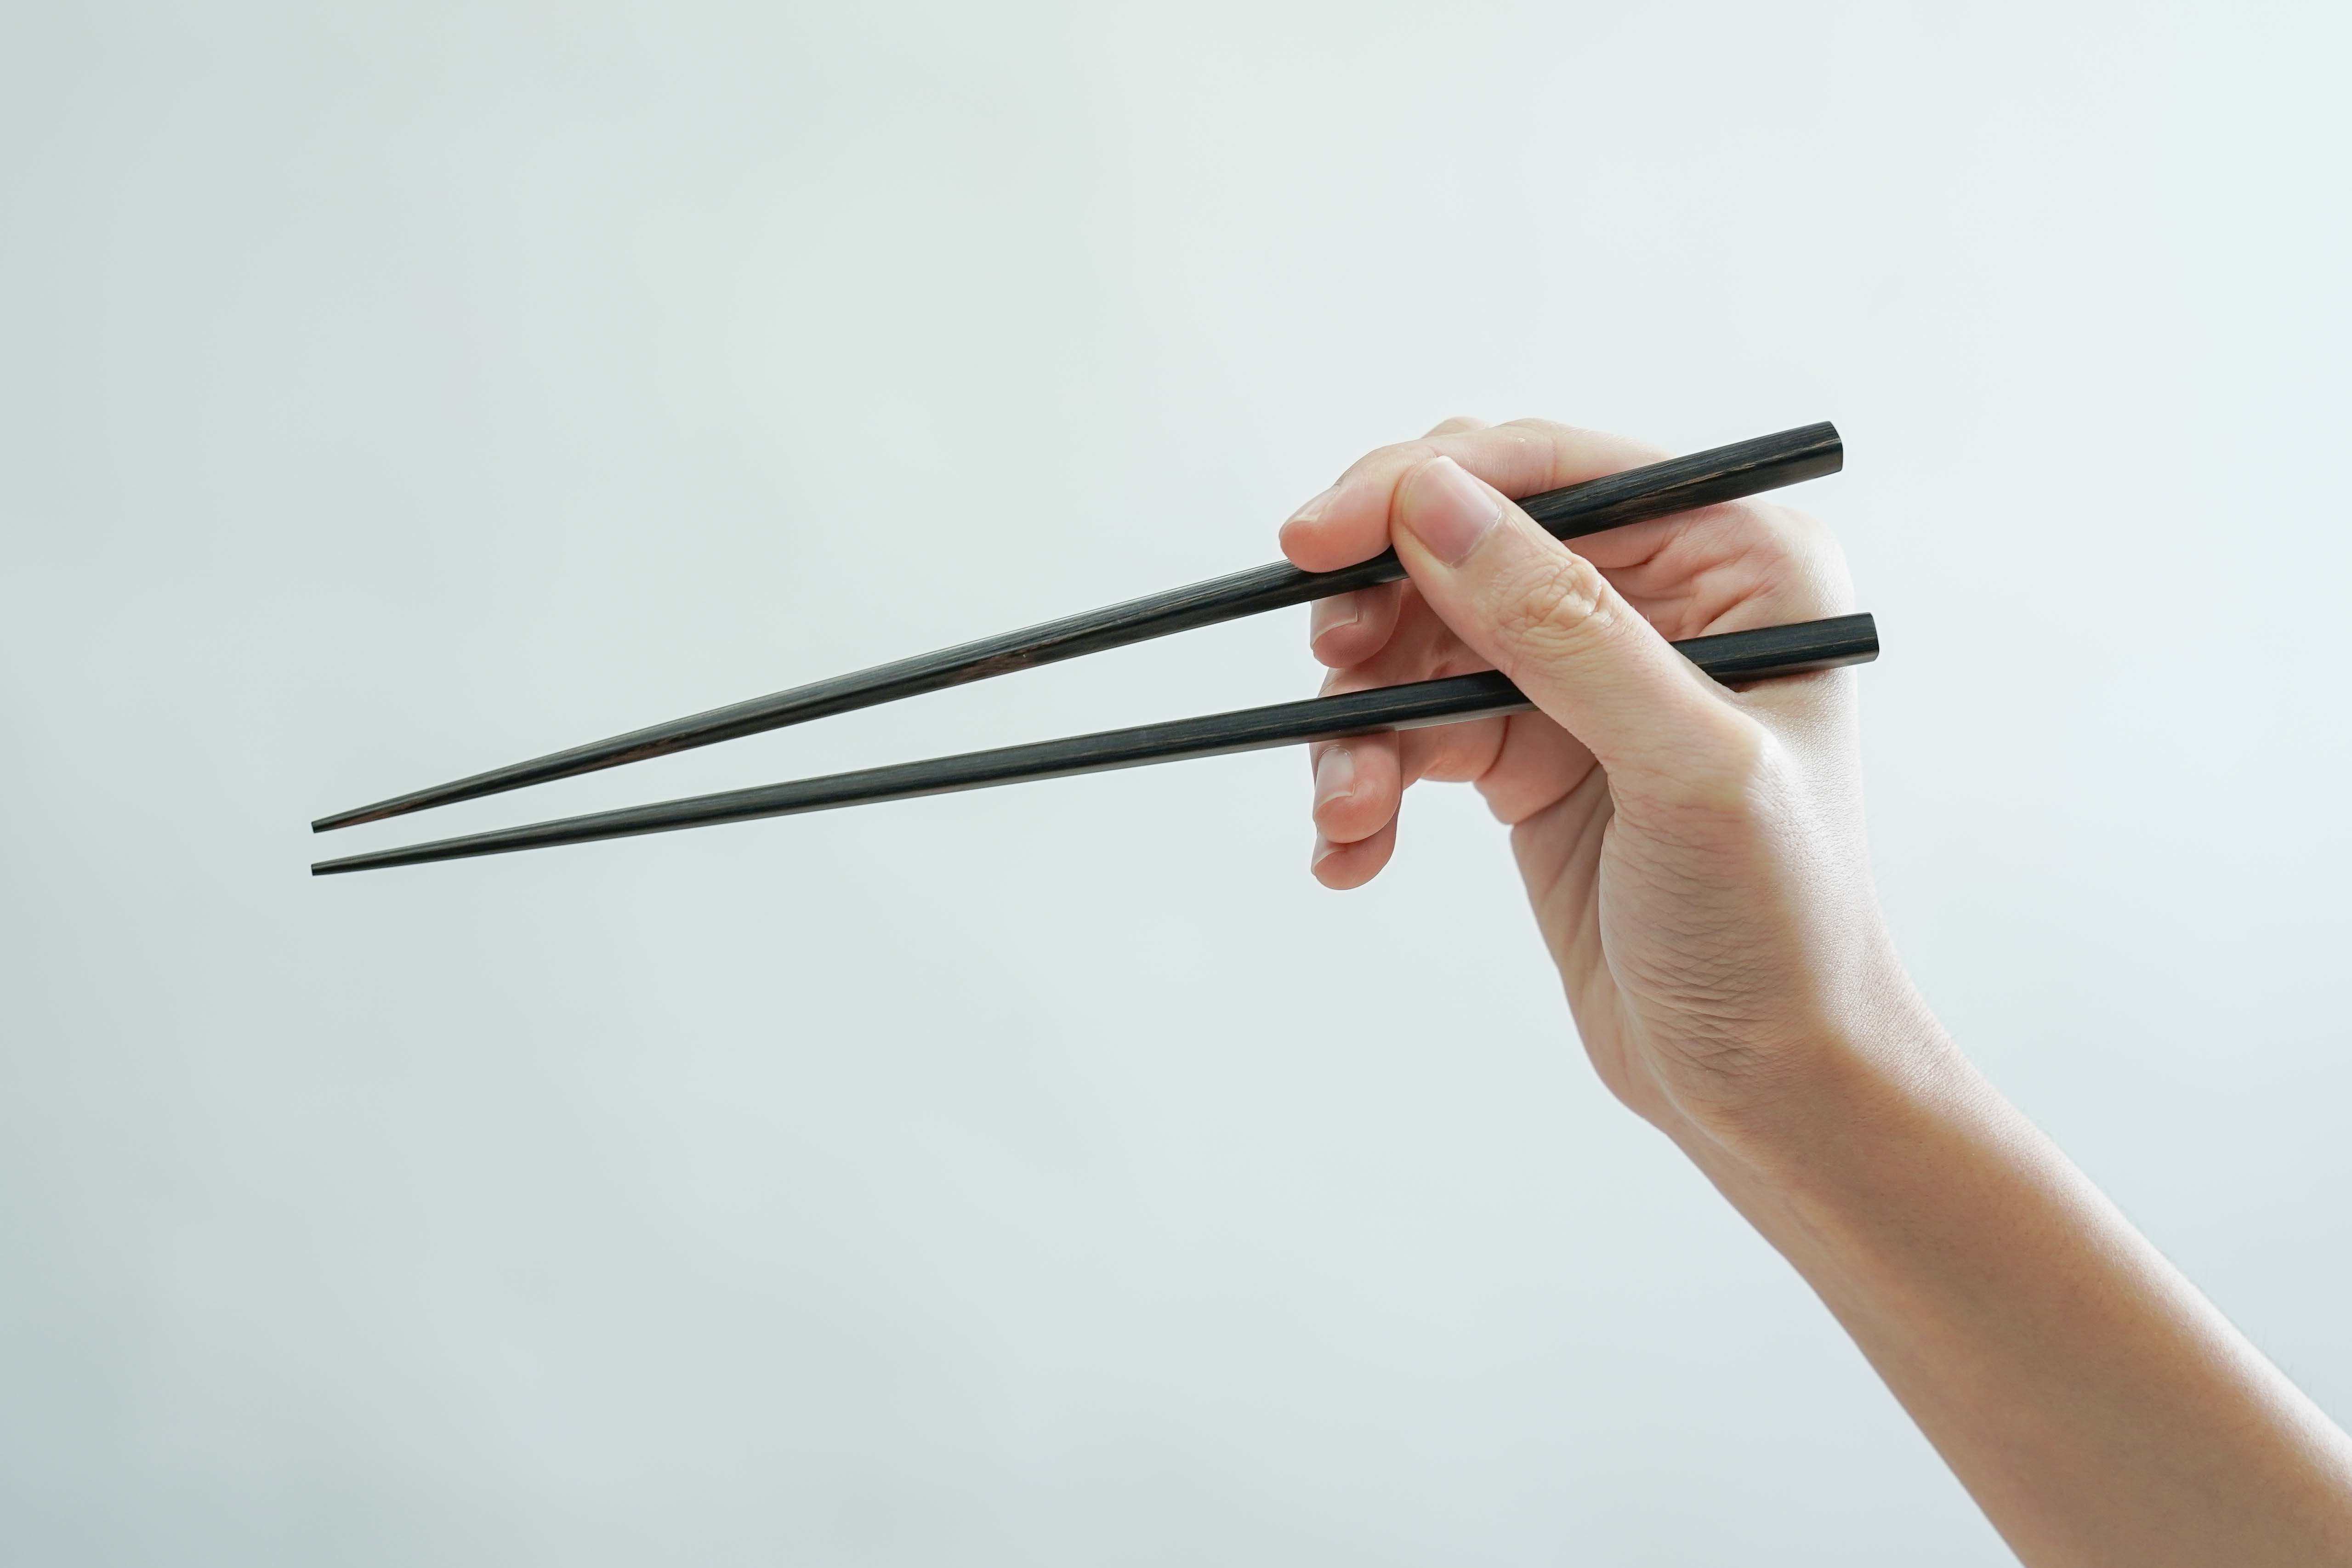 筷子的使用方法 库存矢量图（免版税）627647783 | Shutterstock